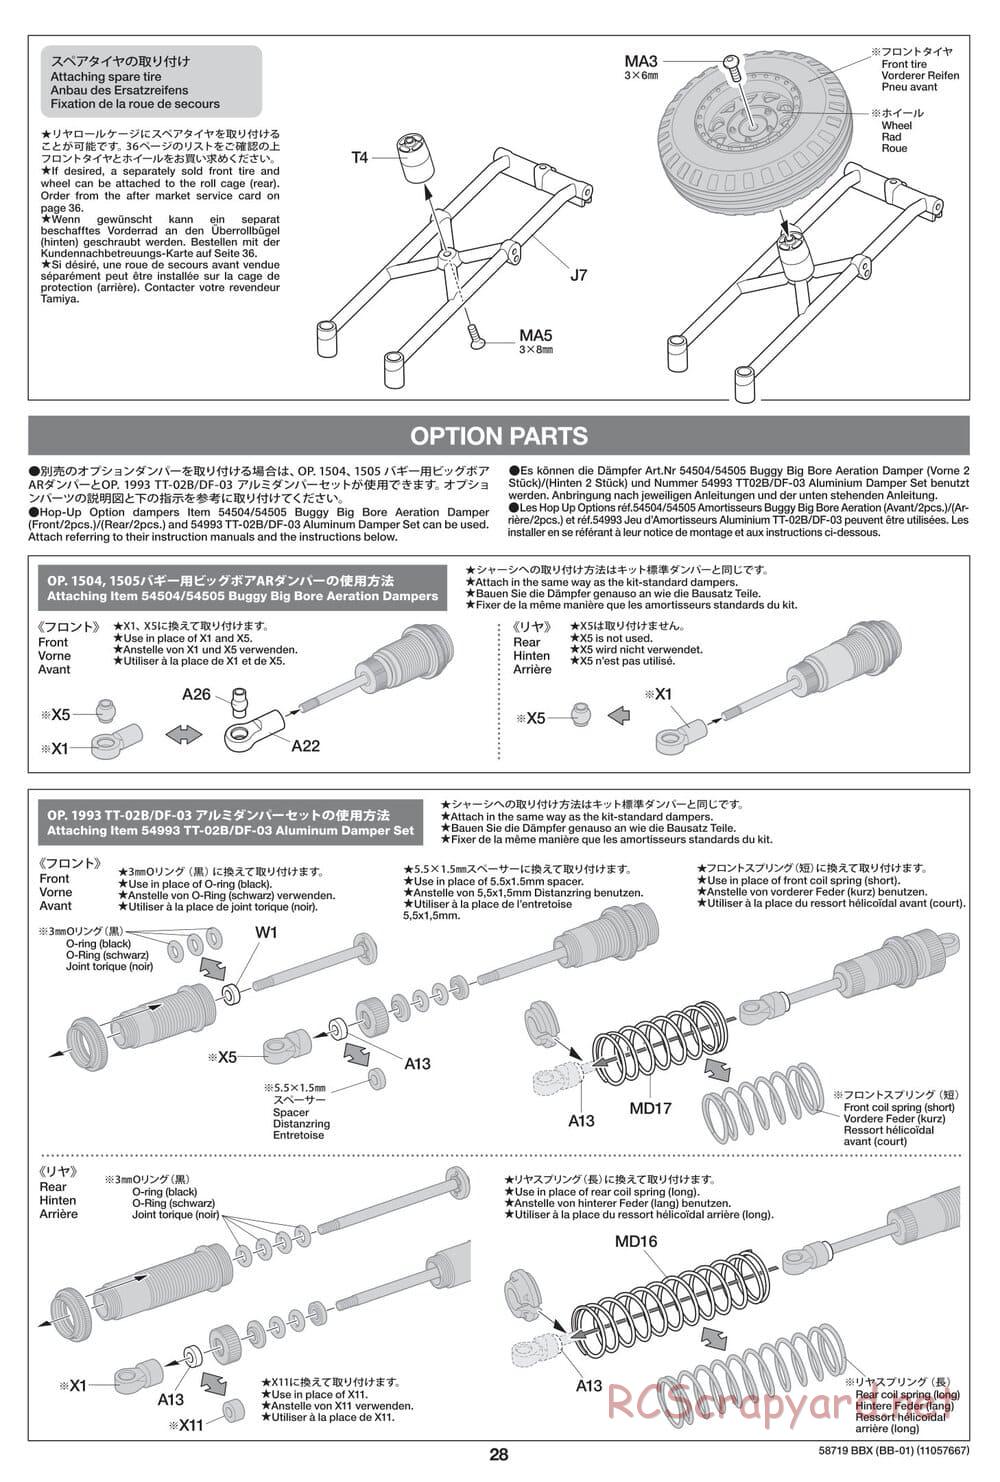 Tamiya - BBX - BB-01 Chassis - Manual - Page 28